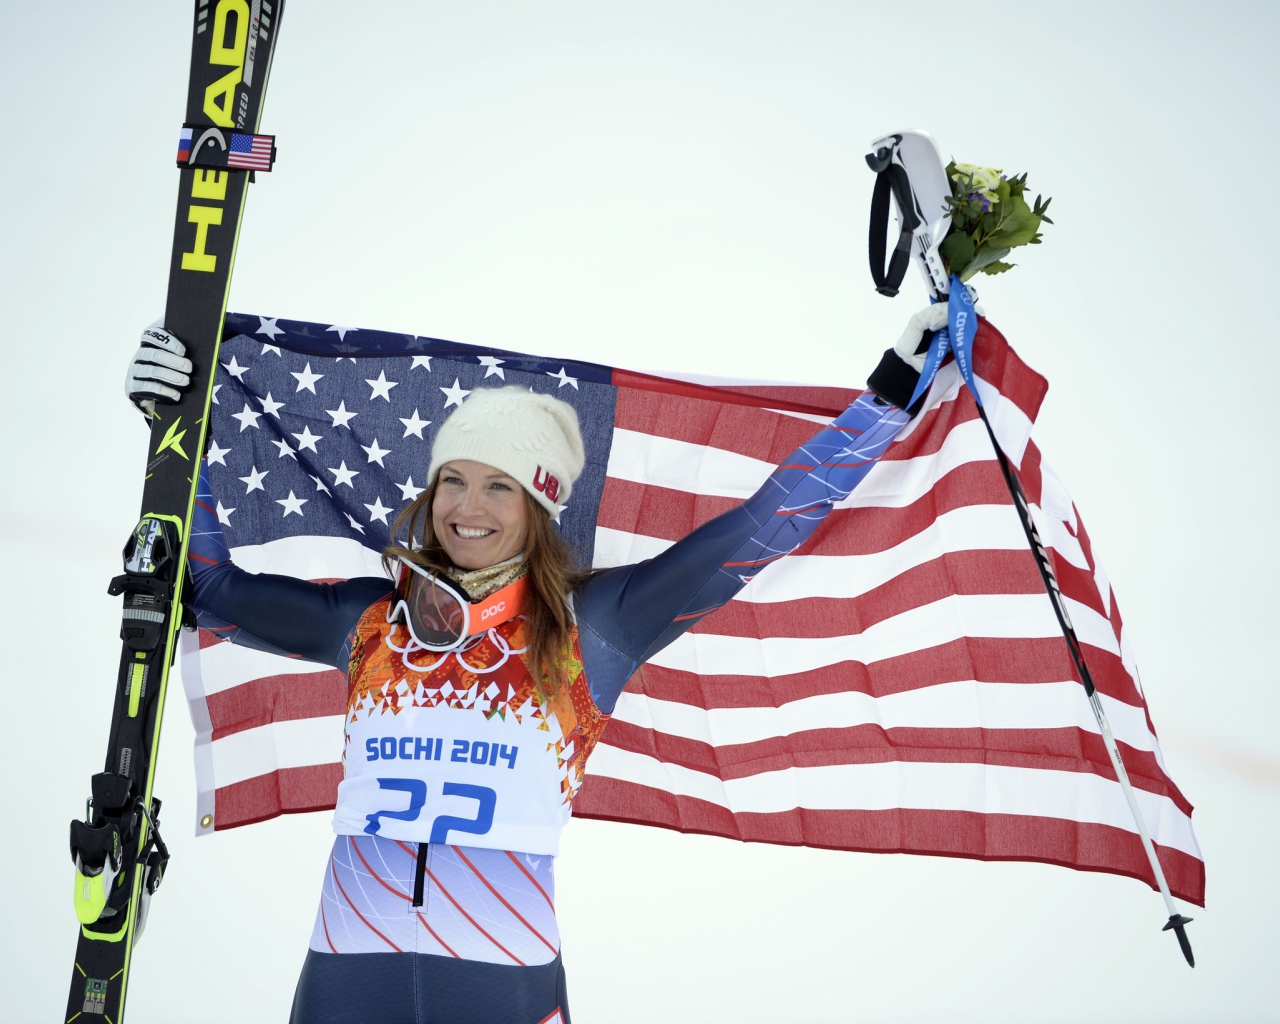 Джулия Манкусо американская лыжница бронзовая медаль на олимпиаде в Сочи